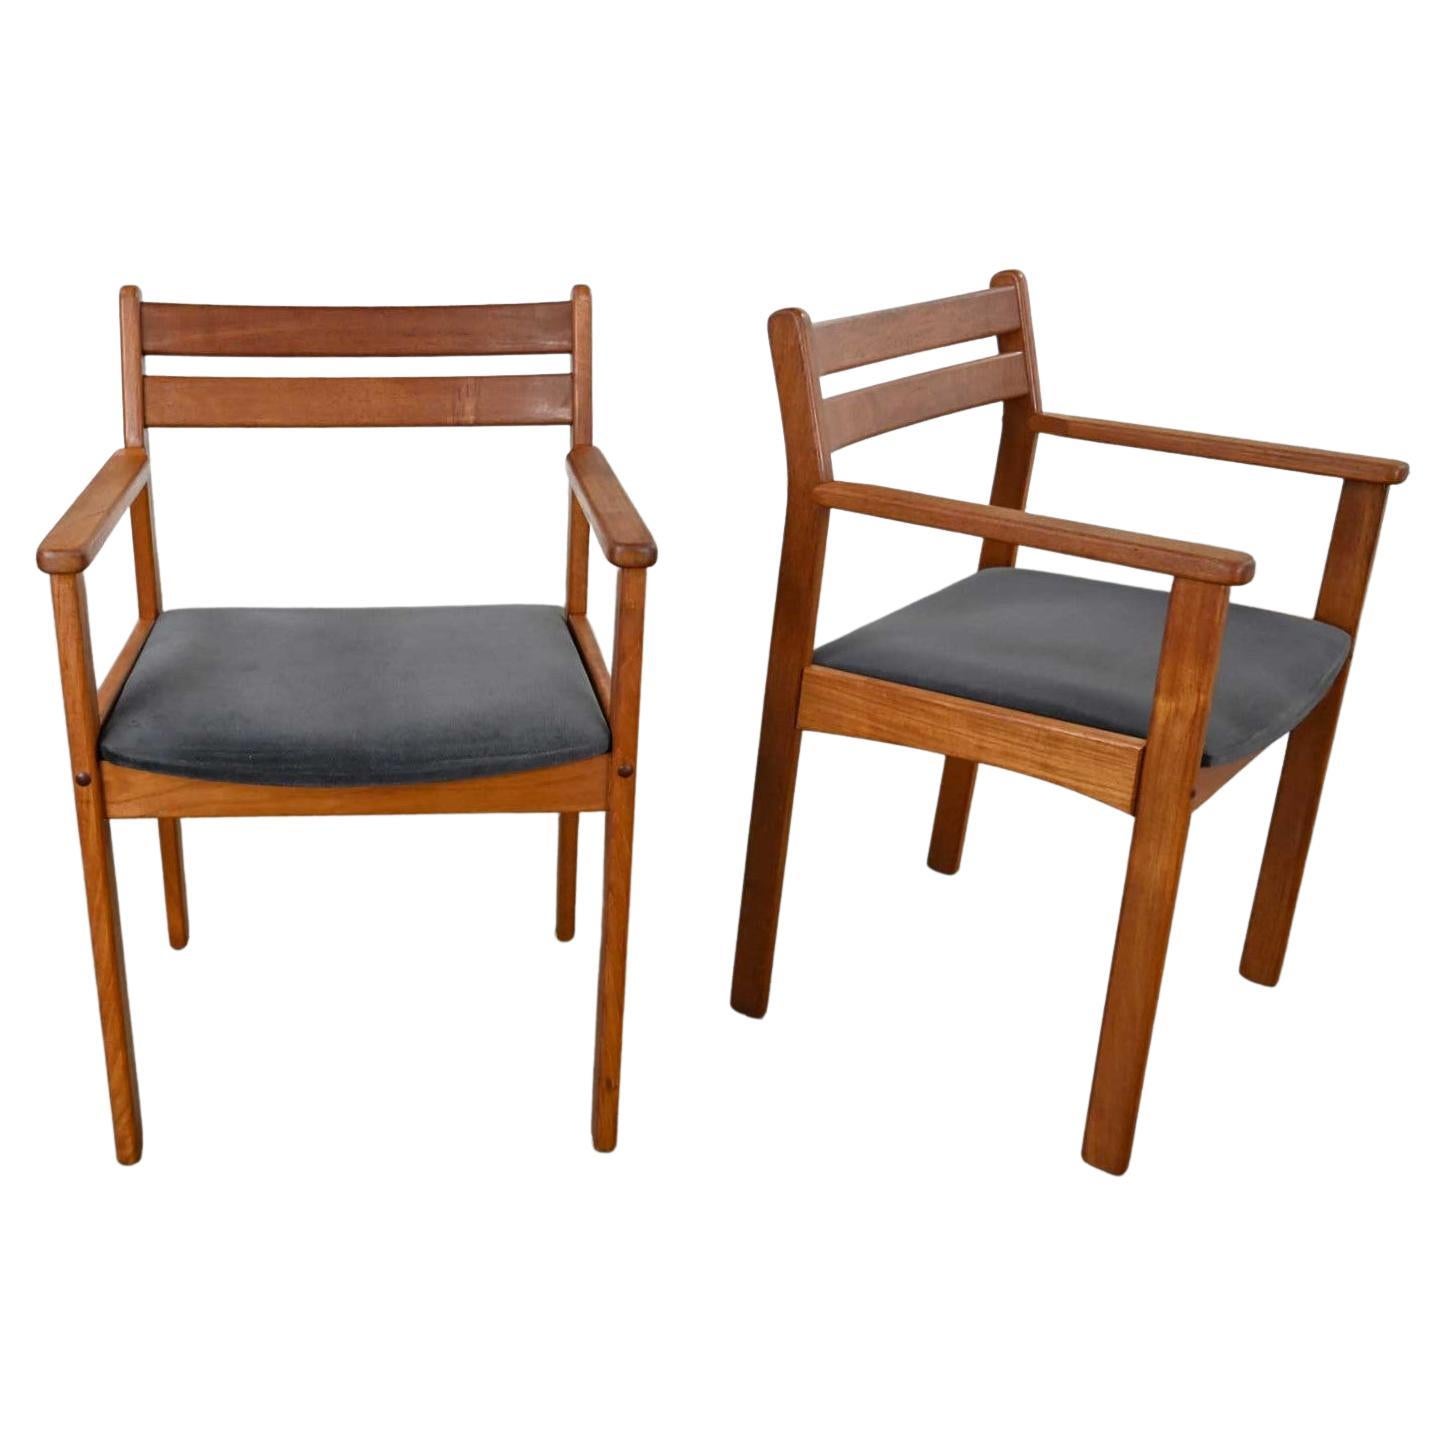 Paire de fauteuils modernes scandinaves en teck avec sièges en tissu anthracite brossé